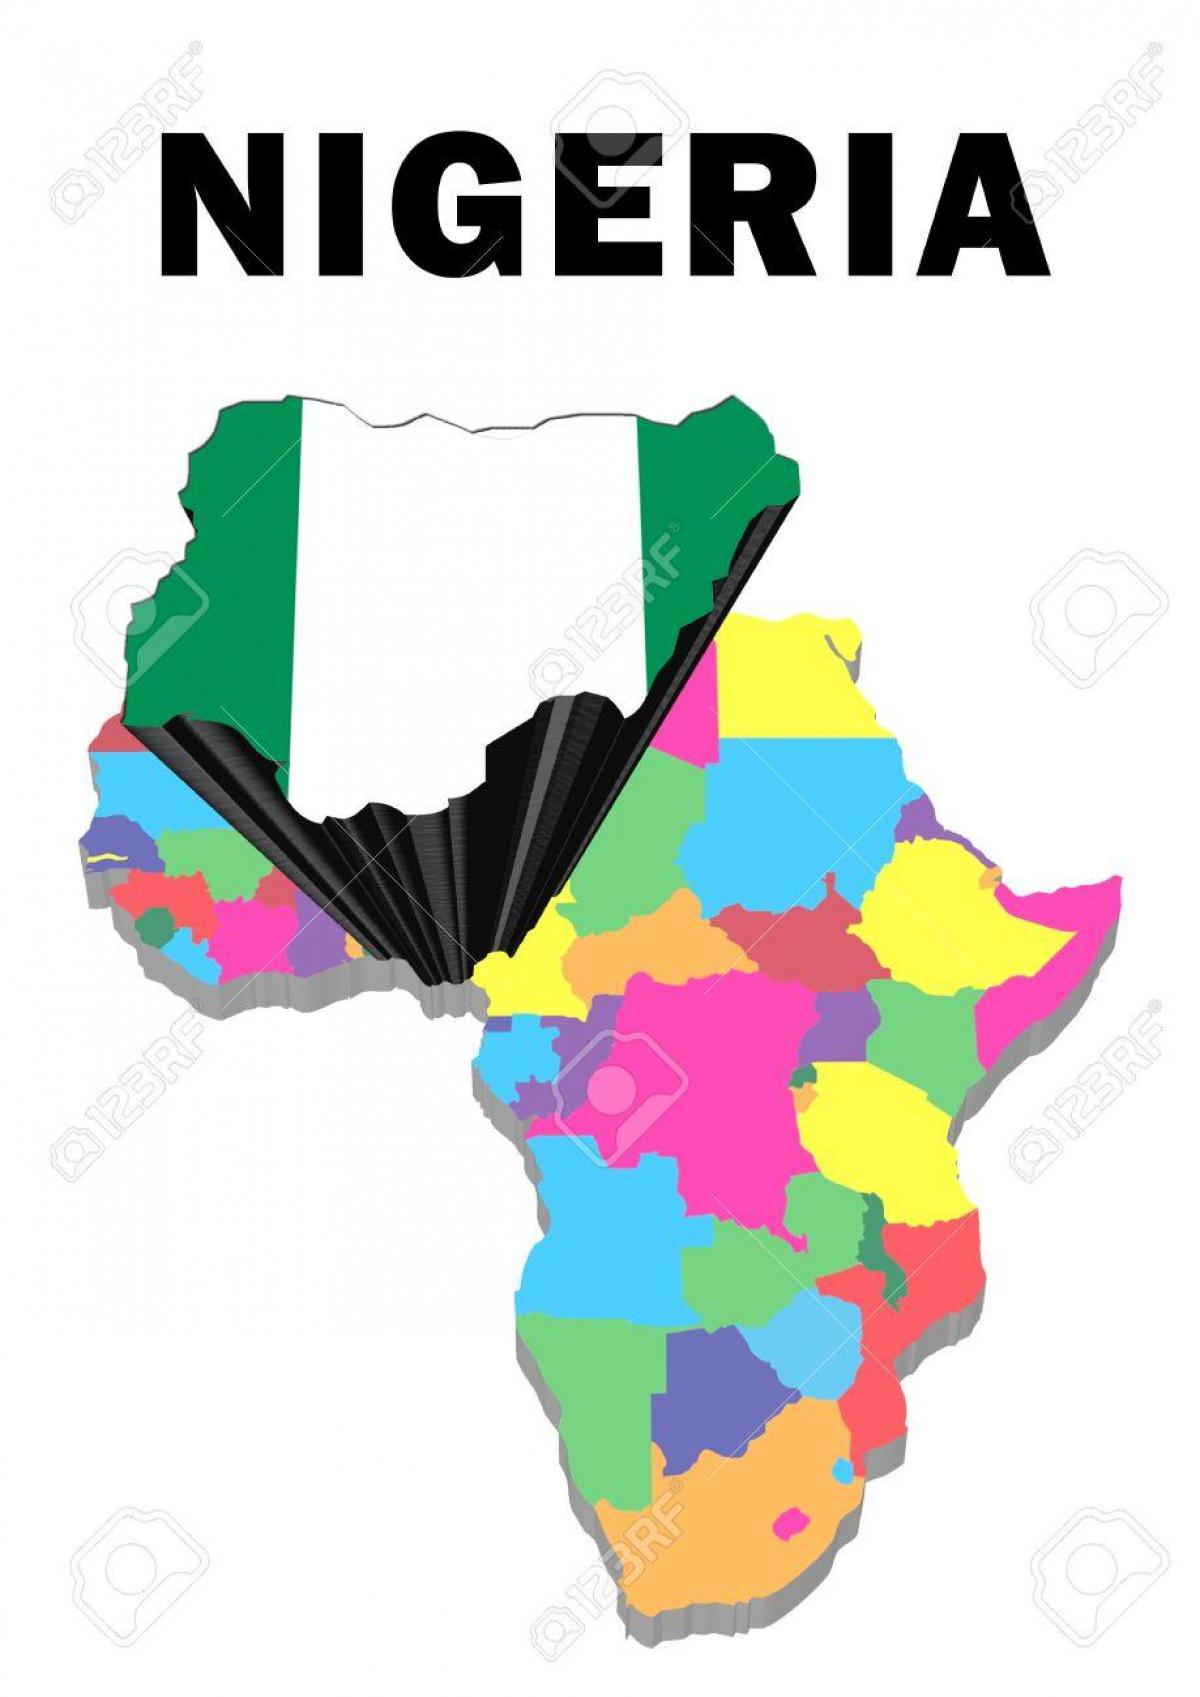 o hartă a africii cu nigeria evidențiate